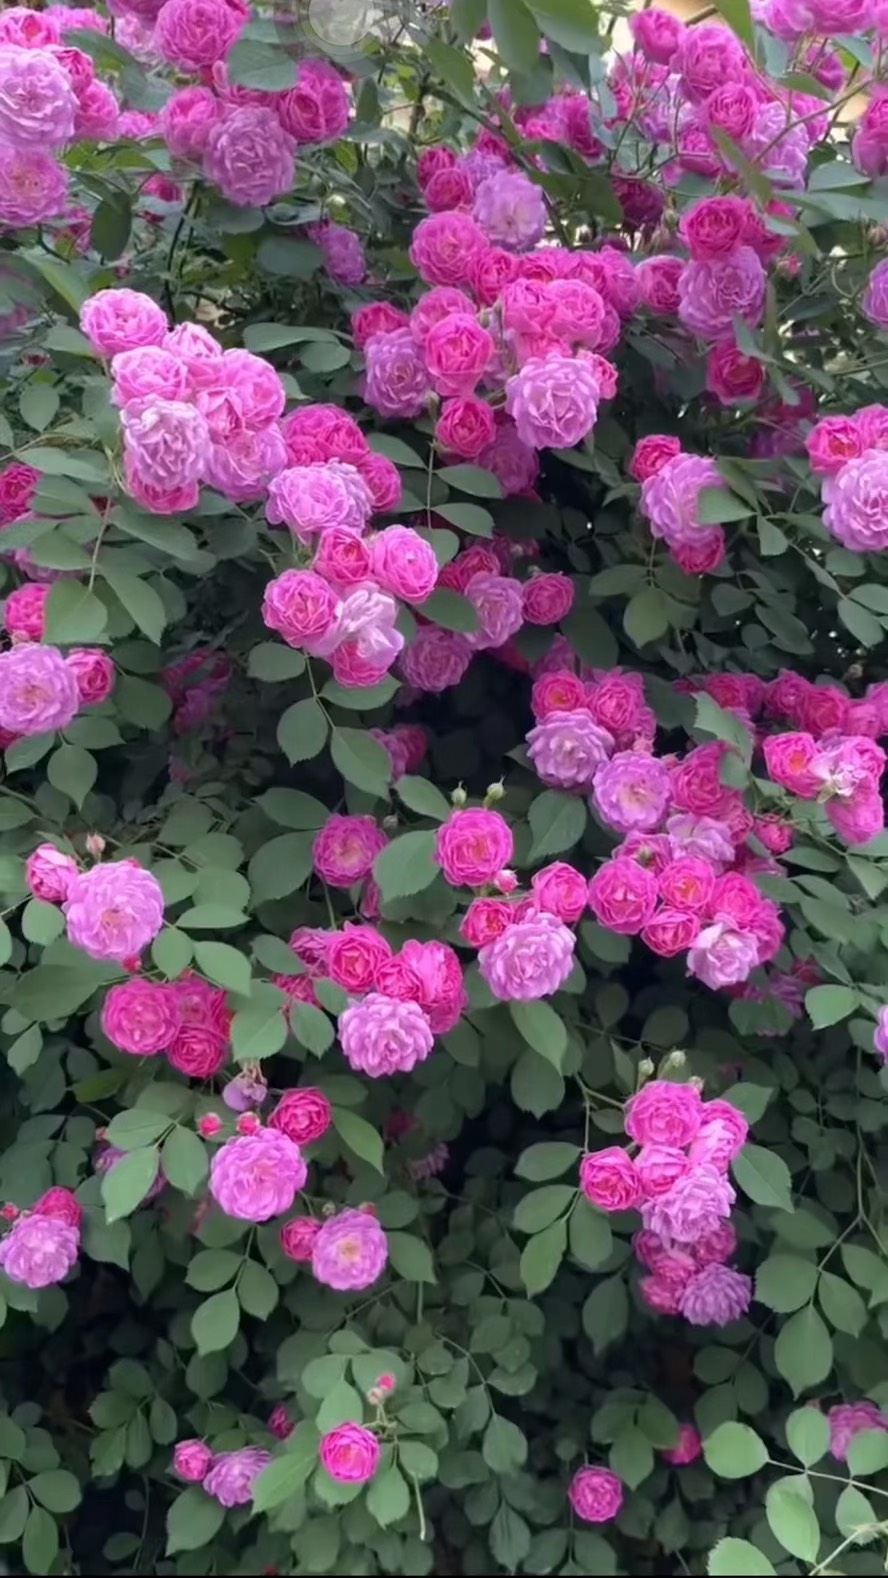 粉色的蔷薇花在绿叶中显得格外醒目,它们散发着淡淡的香气